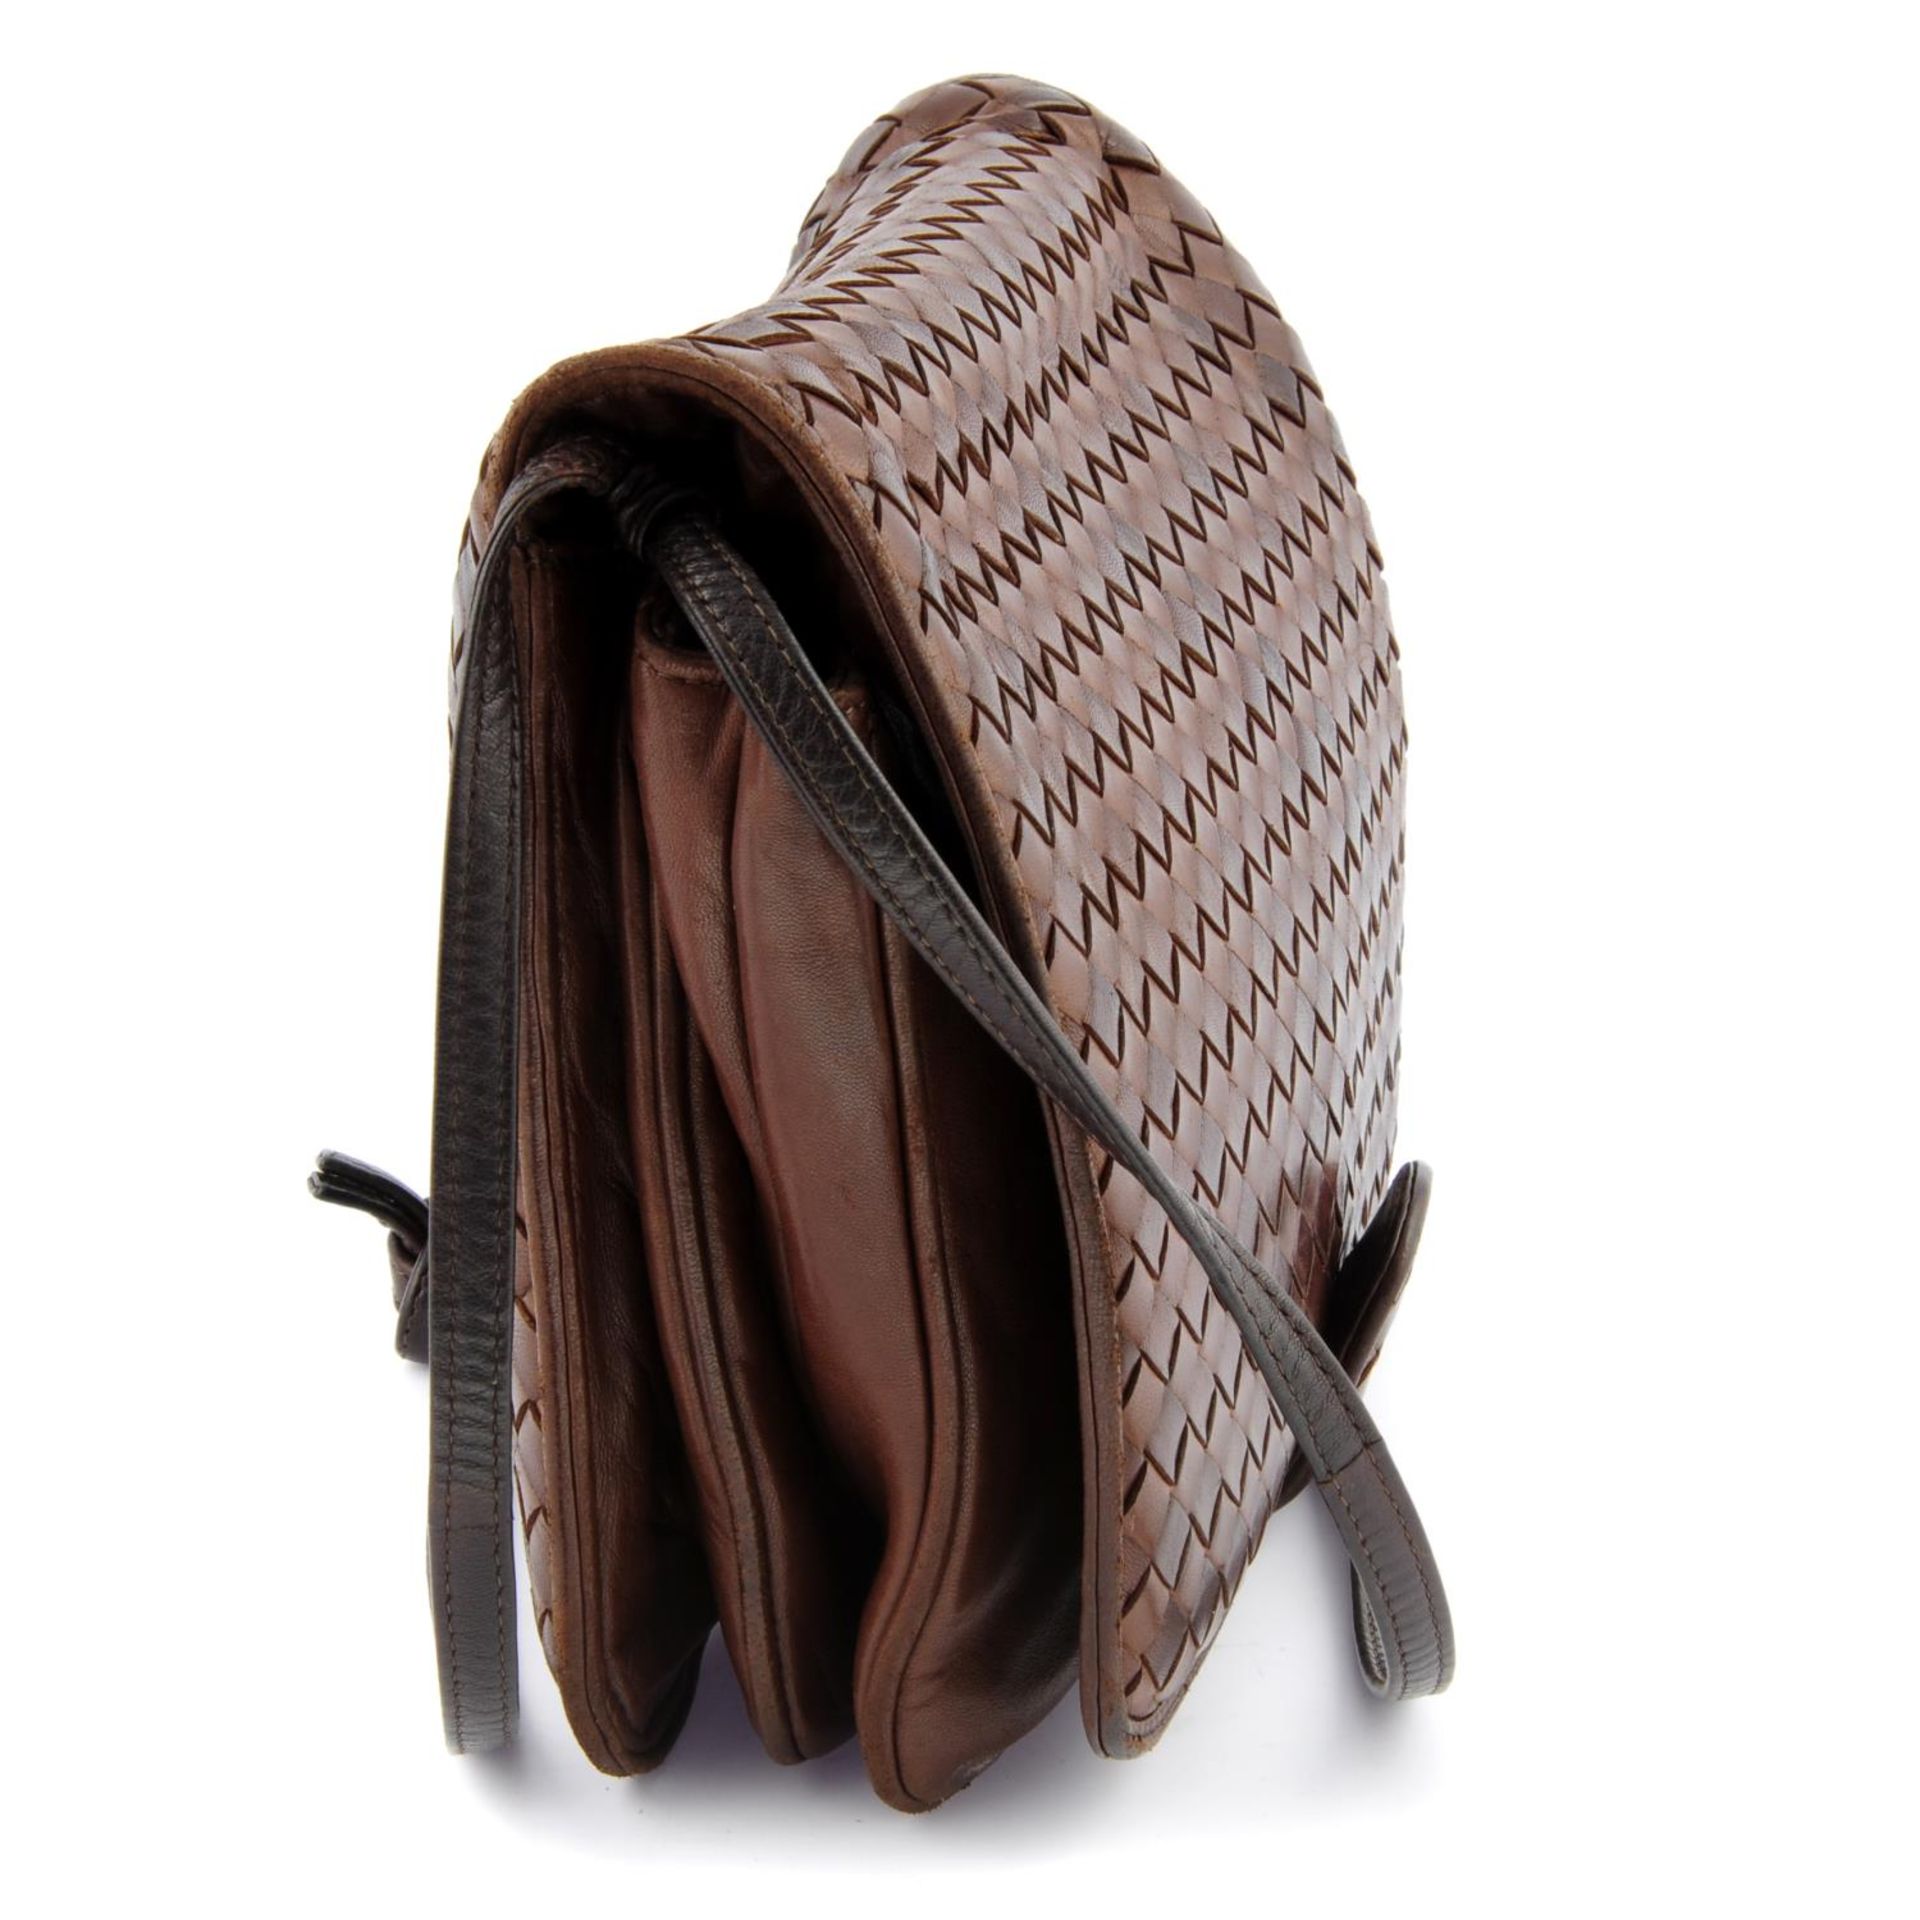 BOTTEGA VENETA - a brown Intrecciato handbag. - Image 3 of 5